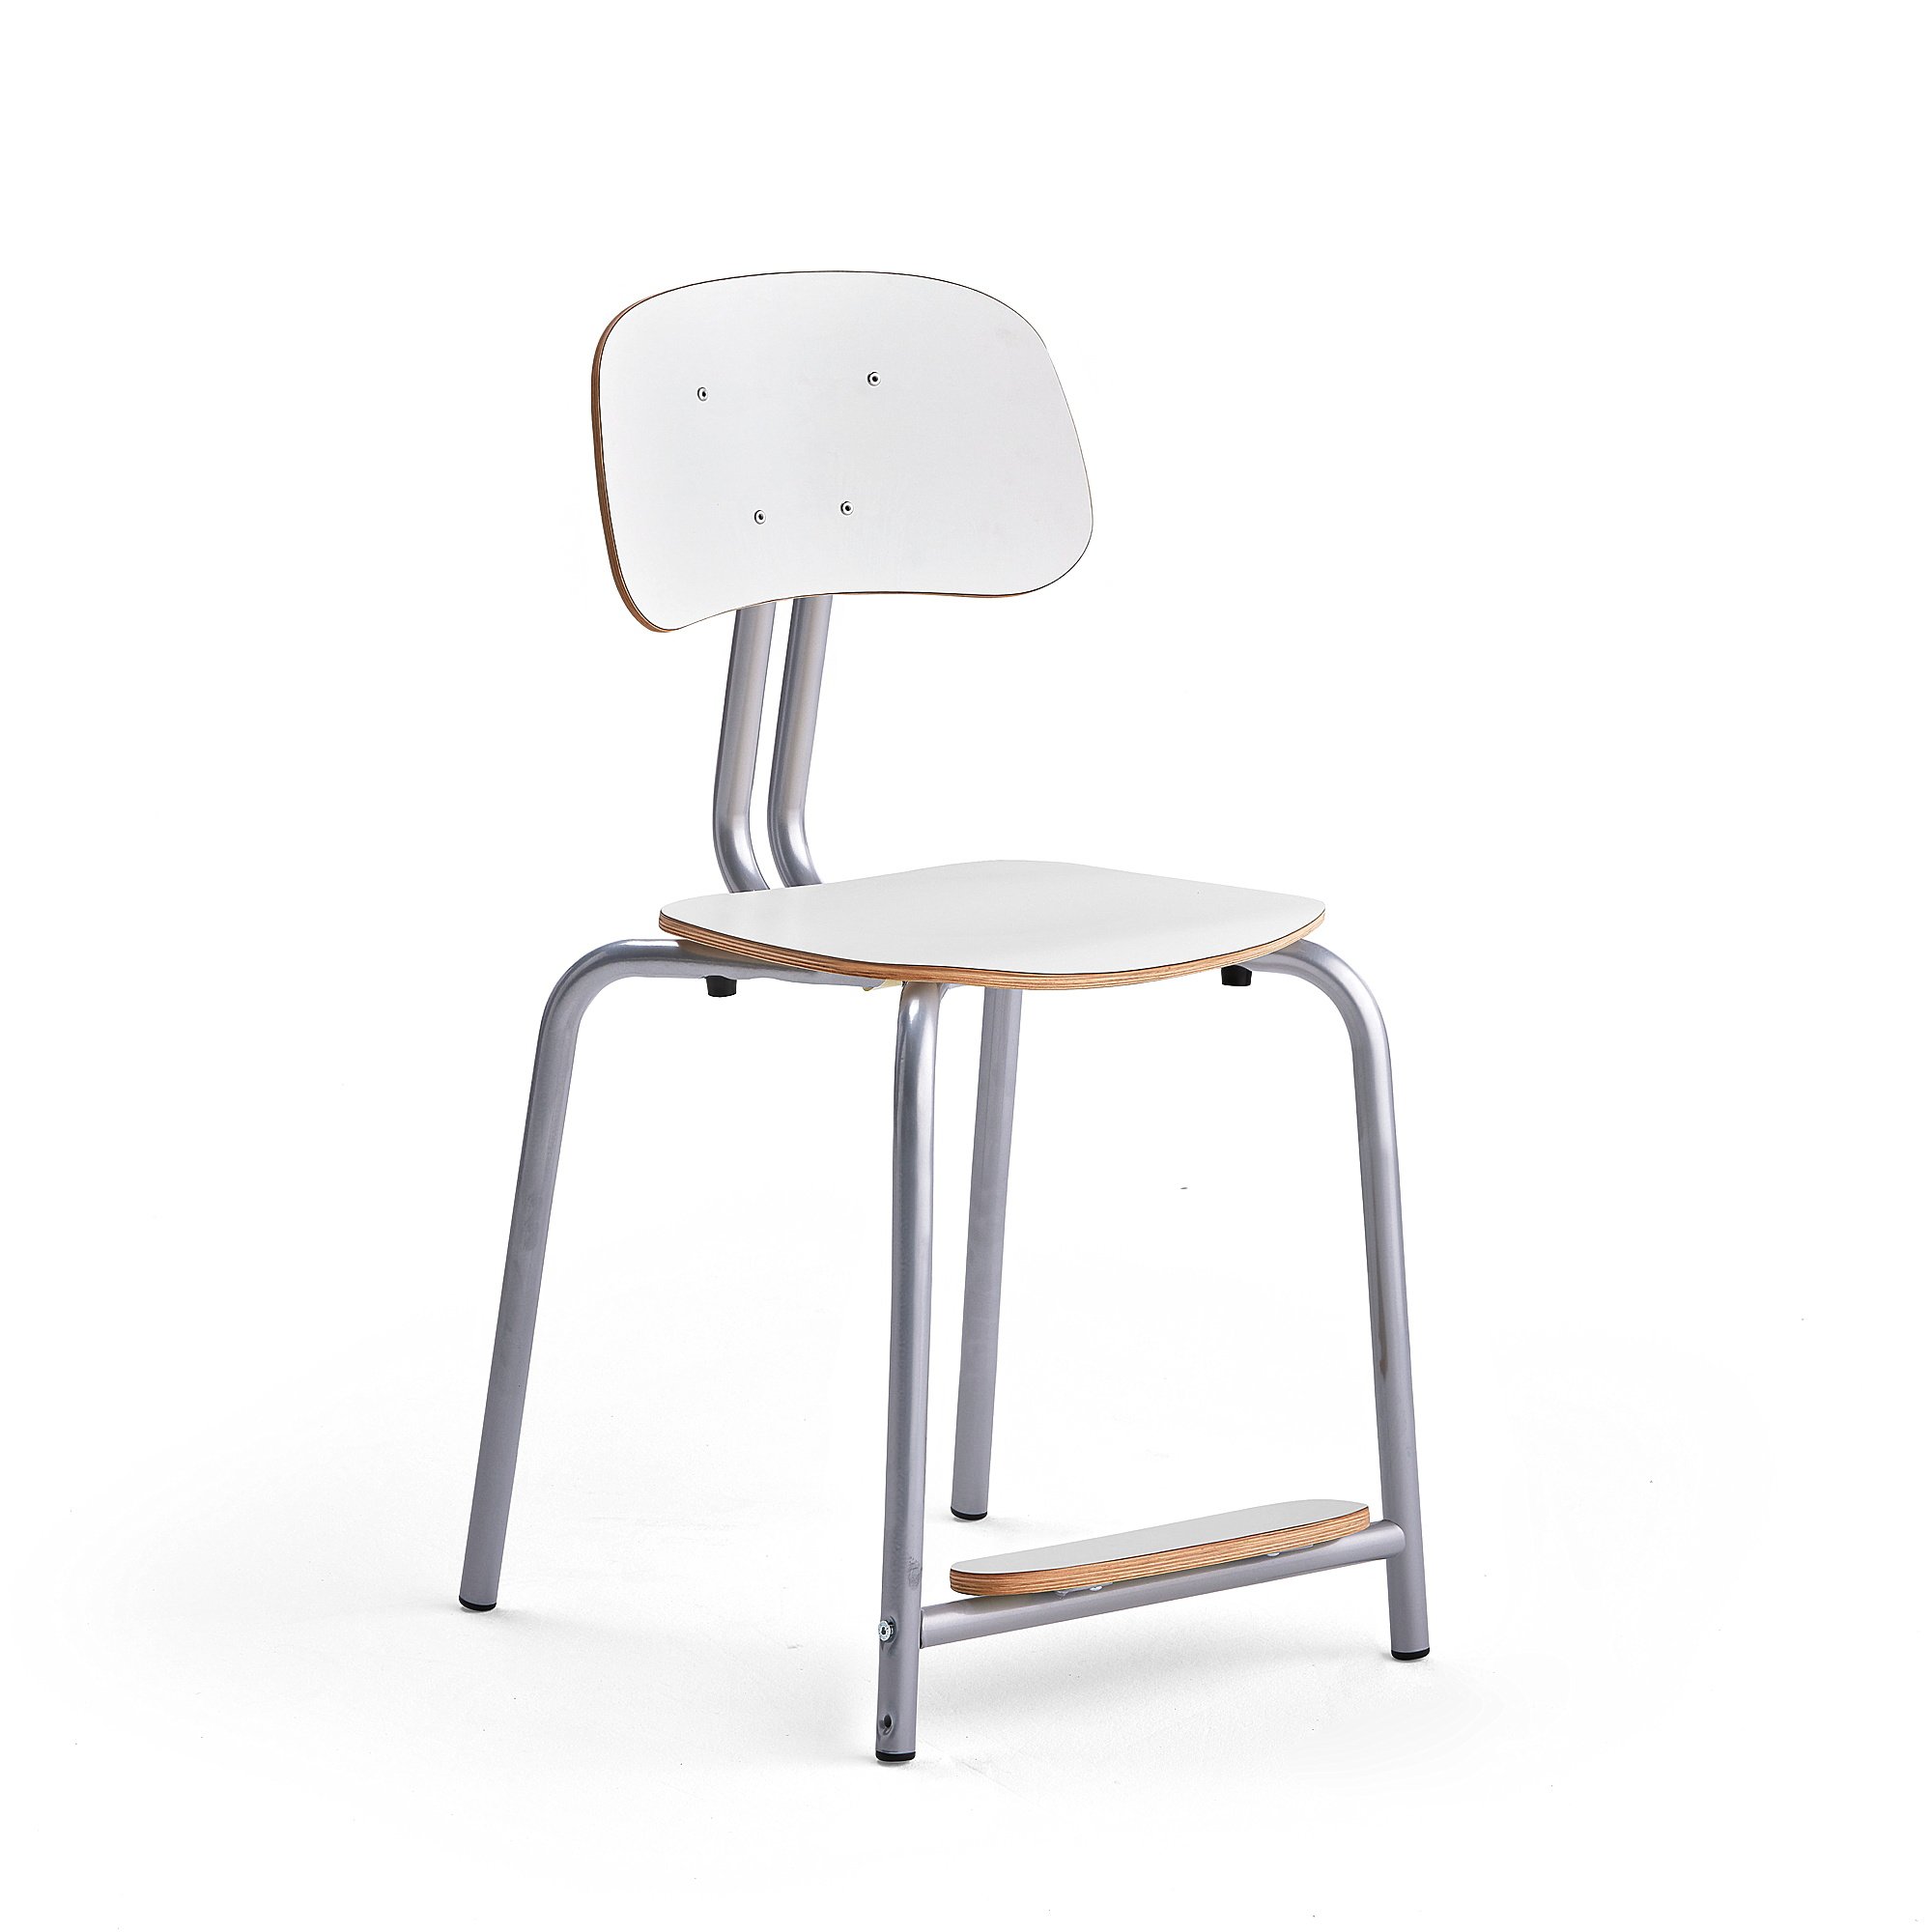 Školní židle YNGVE, 4 nohy, výška 500 mm, stříbrná/bílá